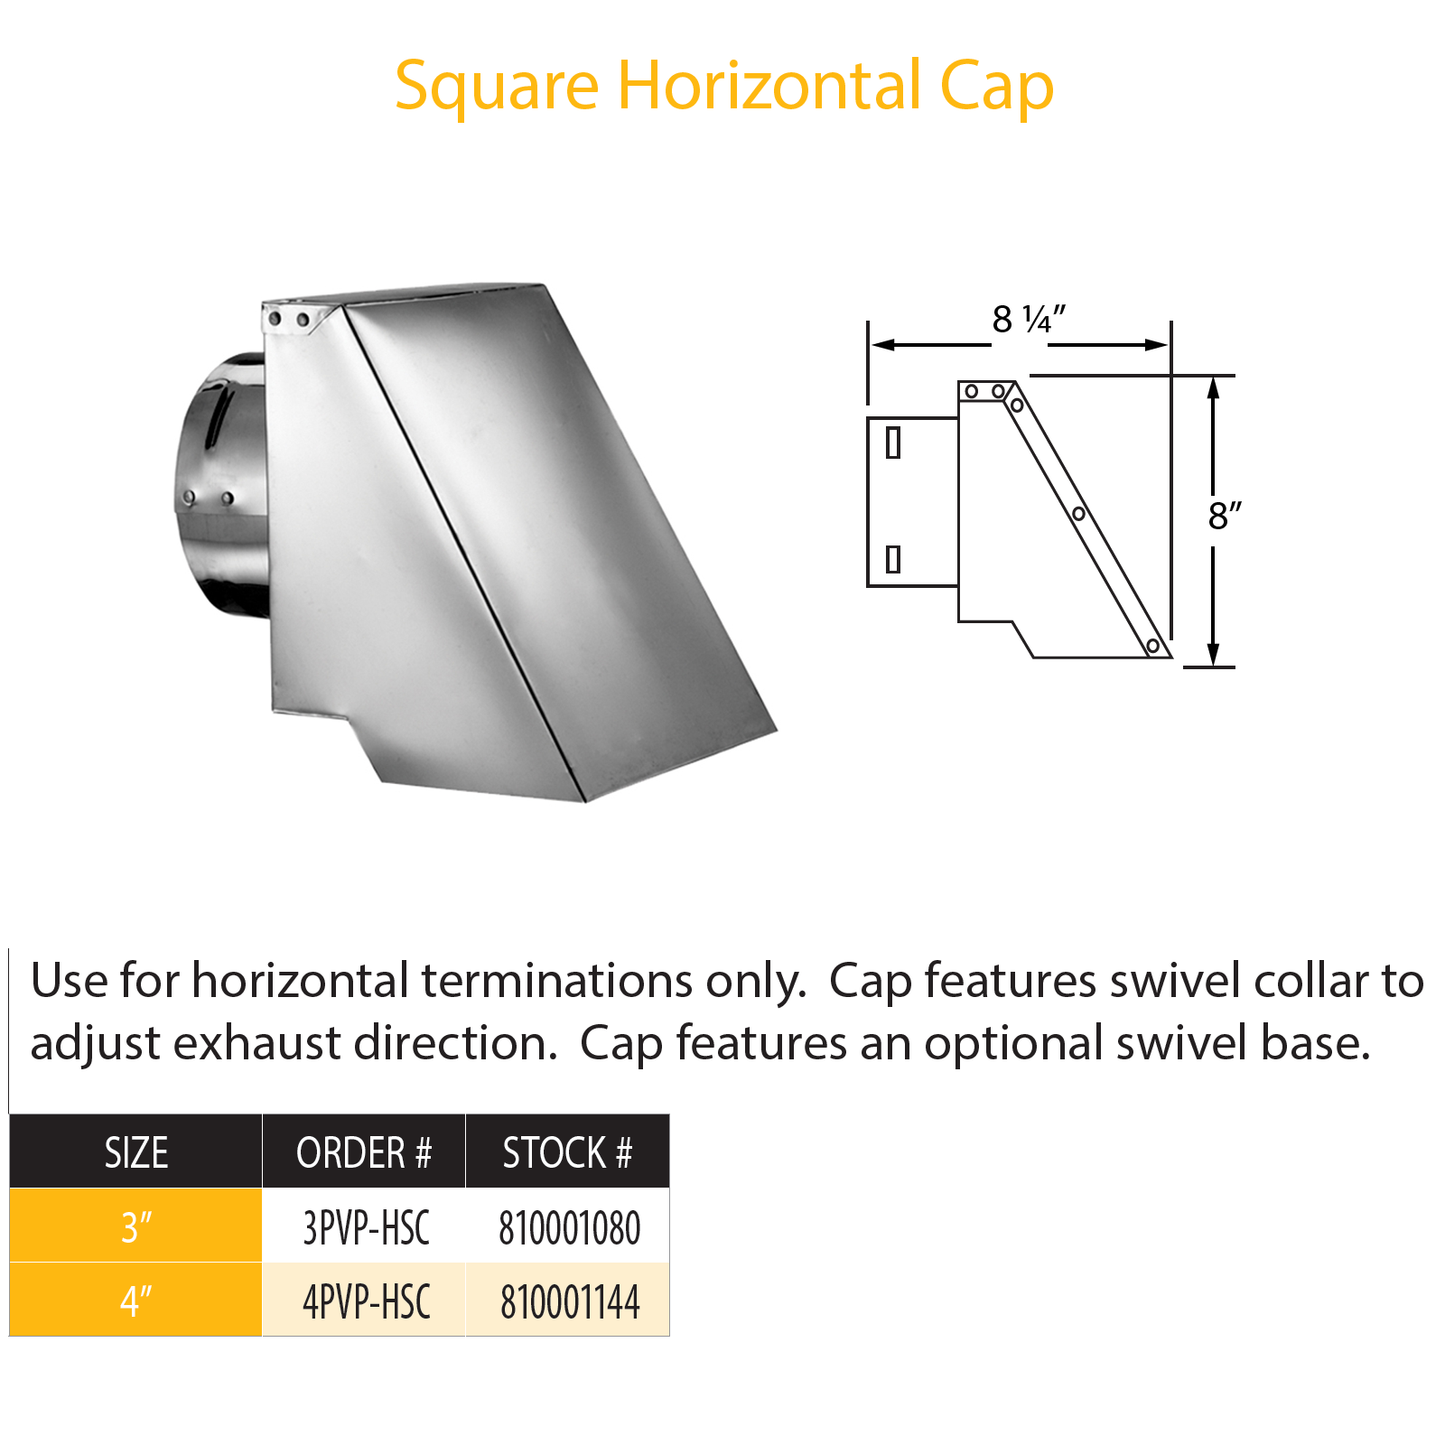 DuraVent Pellet Vent Pro Square Horizontal Cap | 4PVP-HSC